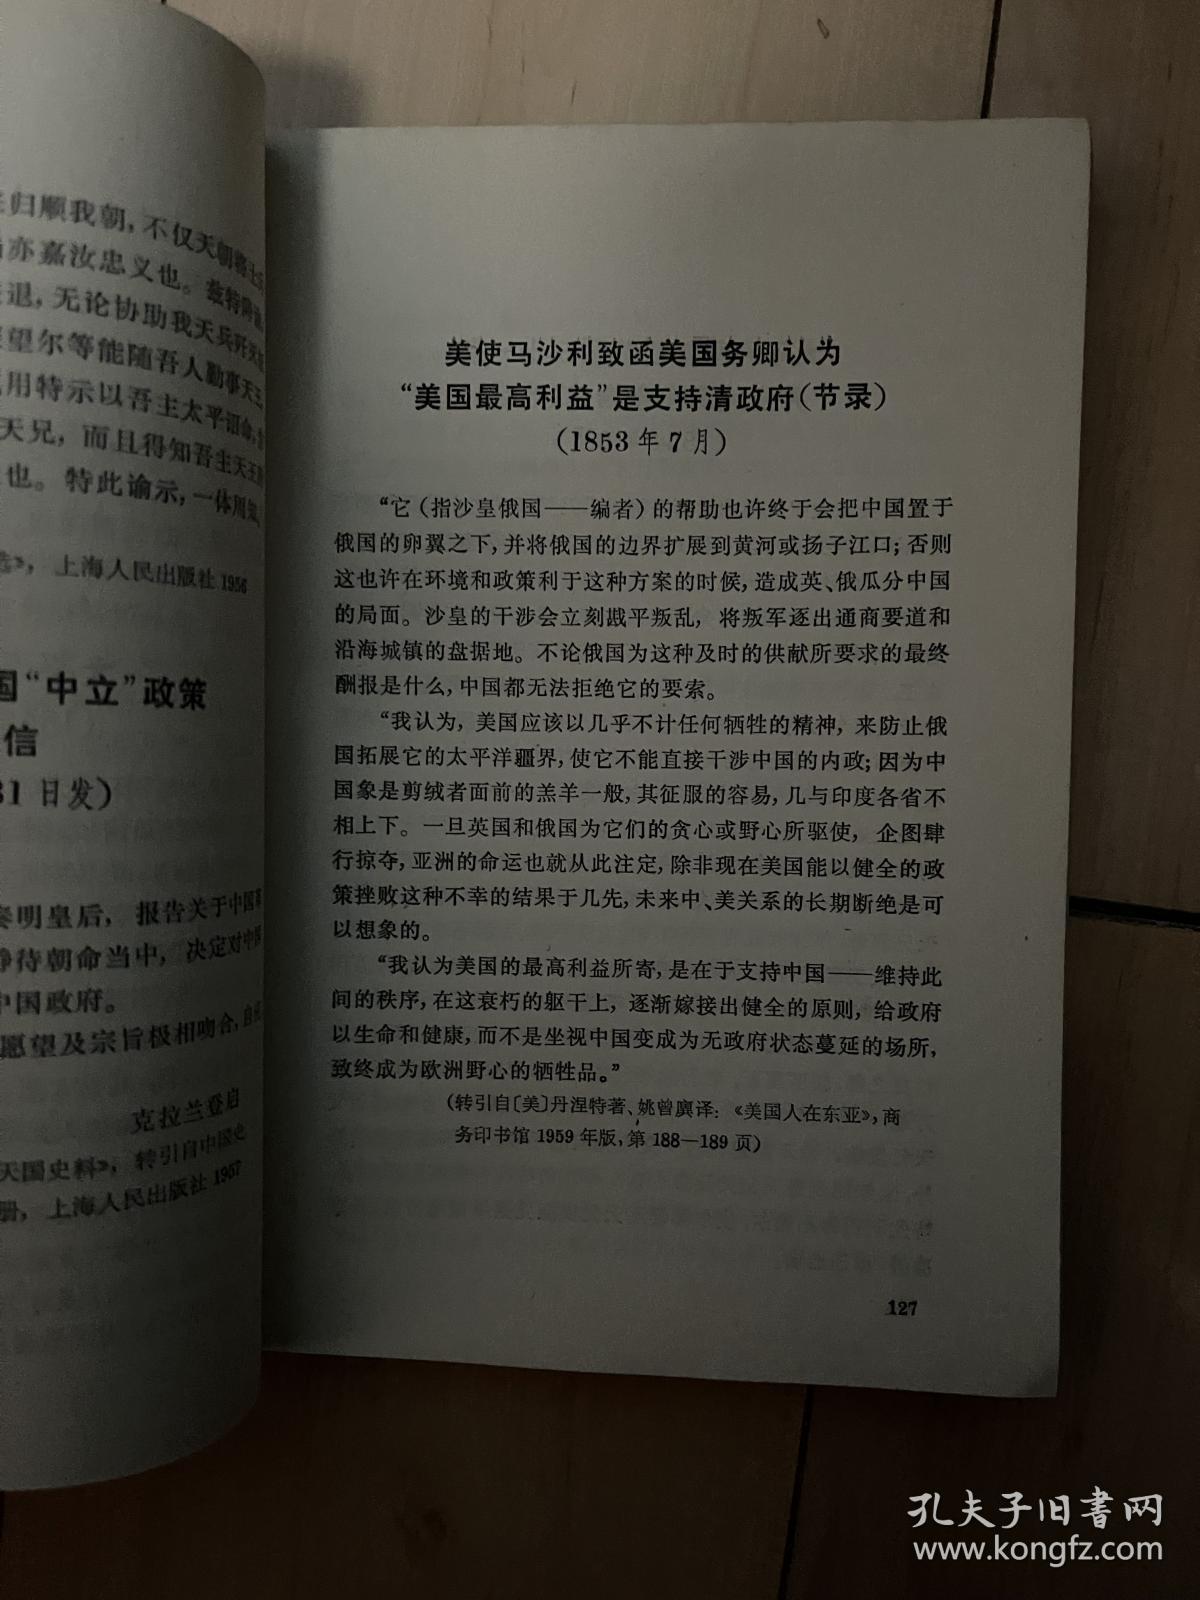 中国近代对外关系史资料选辑 上卷第一分册